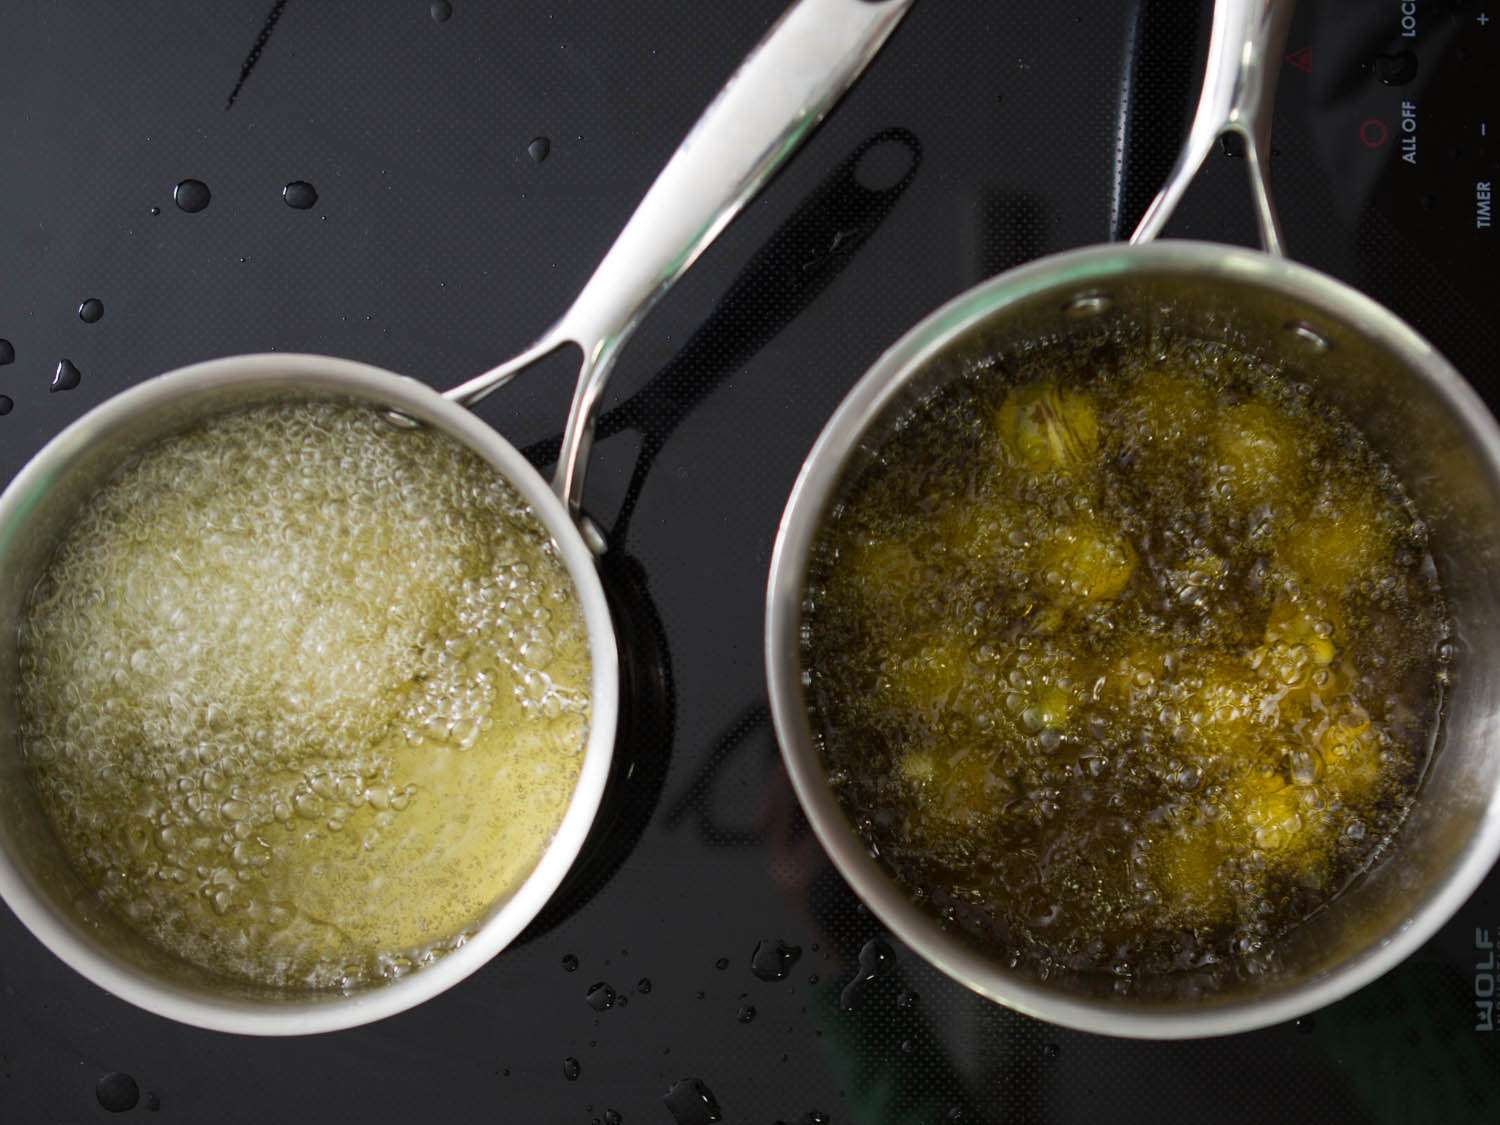 用菜籽油和橄榄油油炸的对比。